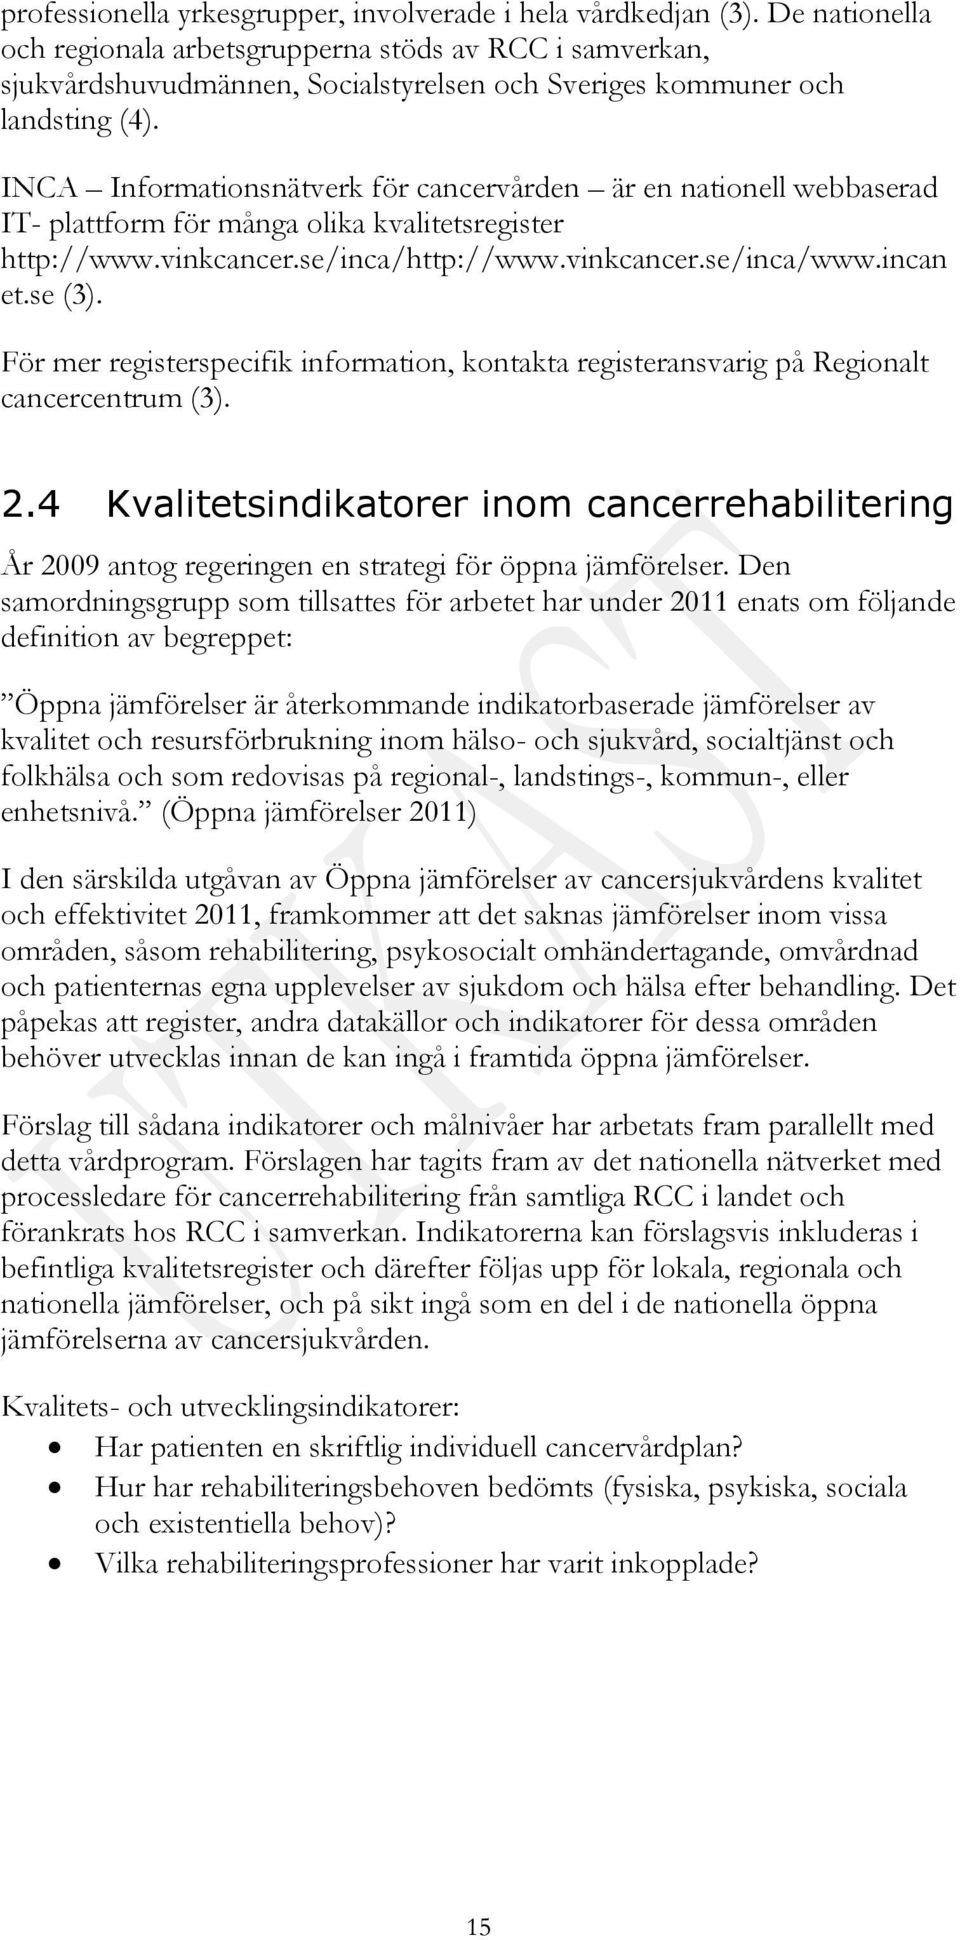 INCA Informationsnätverk för cancervården är en nationell webbaserad IT- plattform för många olika kvalitetsregister http://www.vinkcancer.se/inca/http://www.vinkcancer.se/inca/www.incan et.se (3).